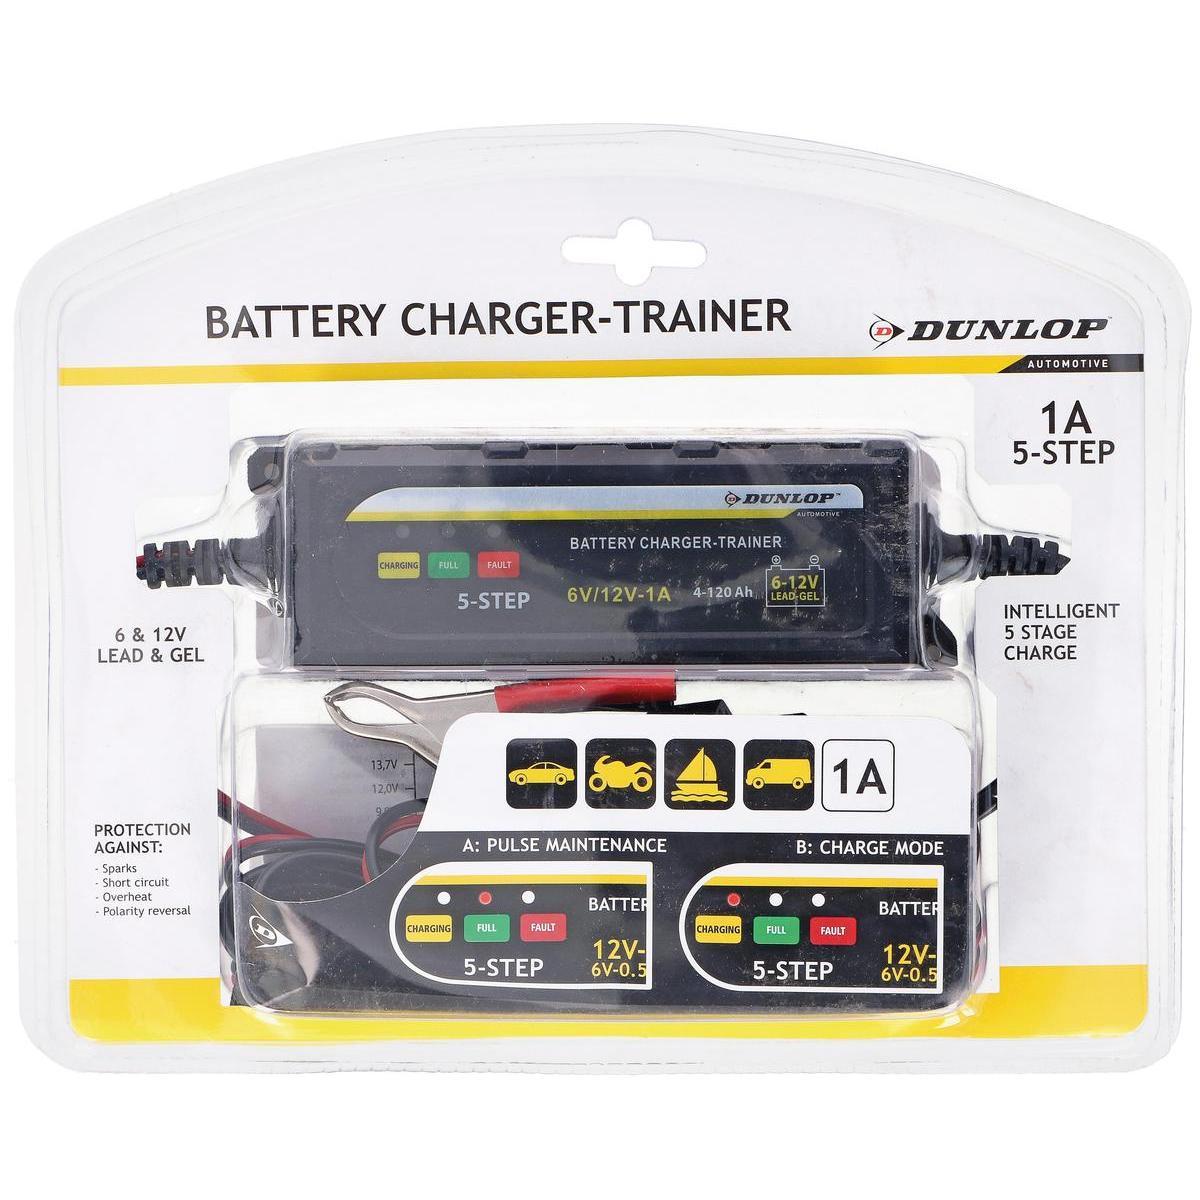 Chargeur de batterie